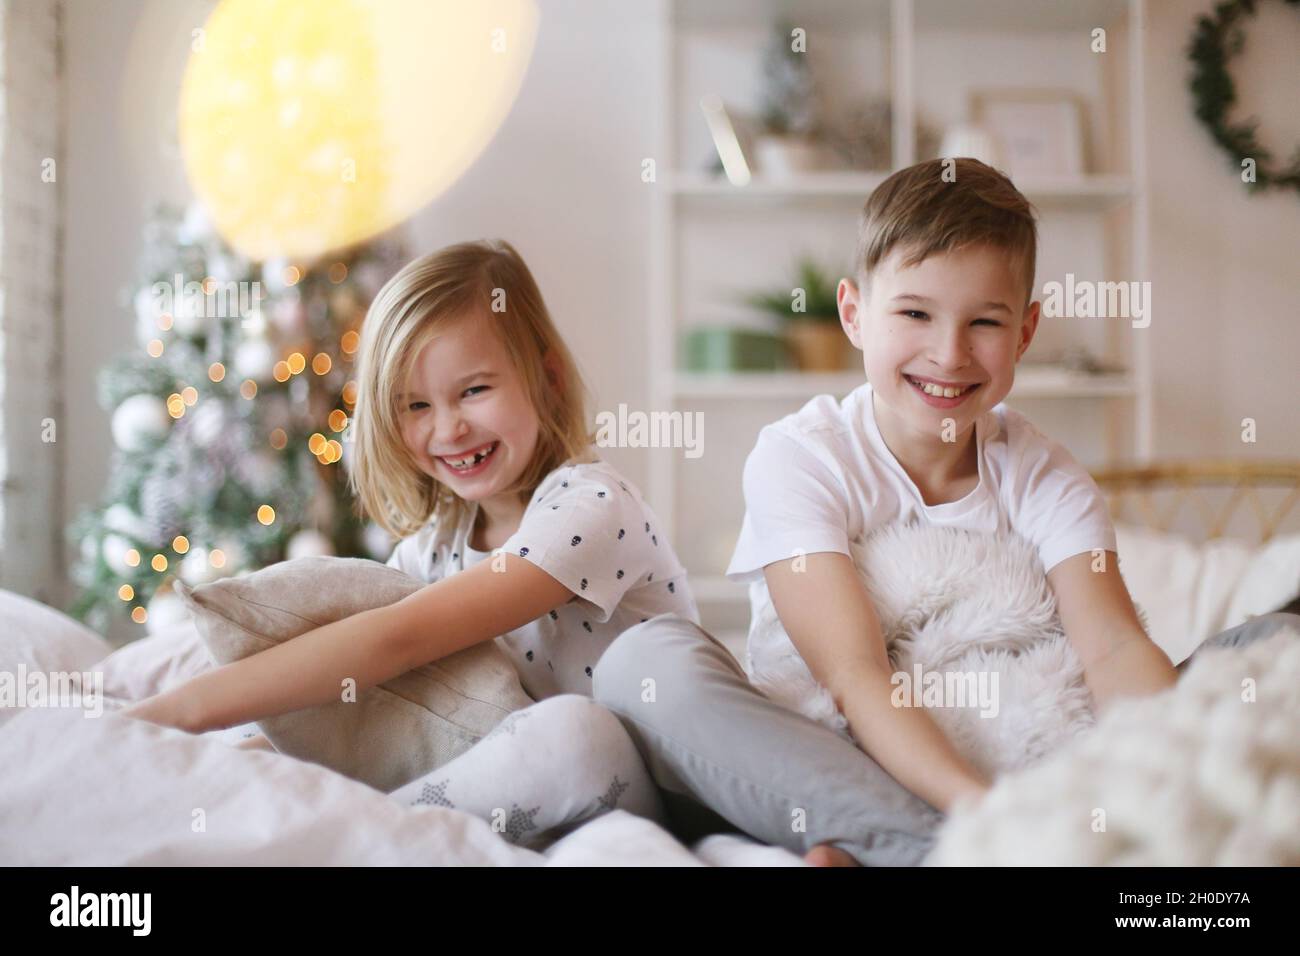 Kinder sitzen auf dem Bett und schauen lächelnd auf die Kamera. Stockfoto